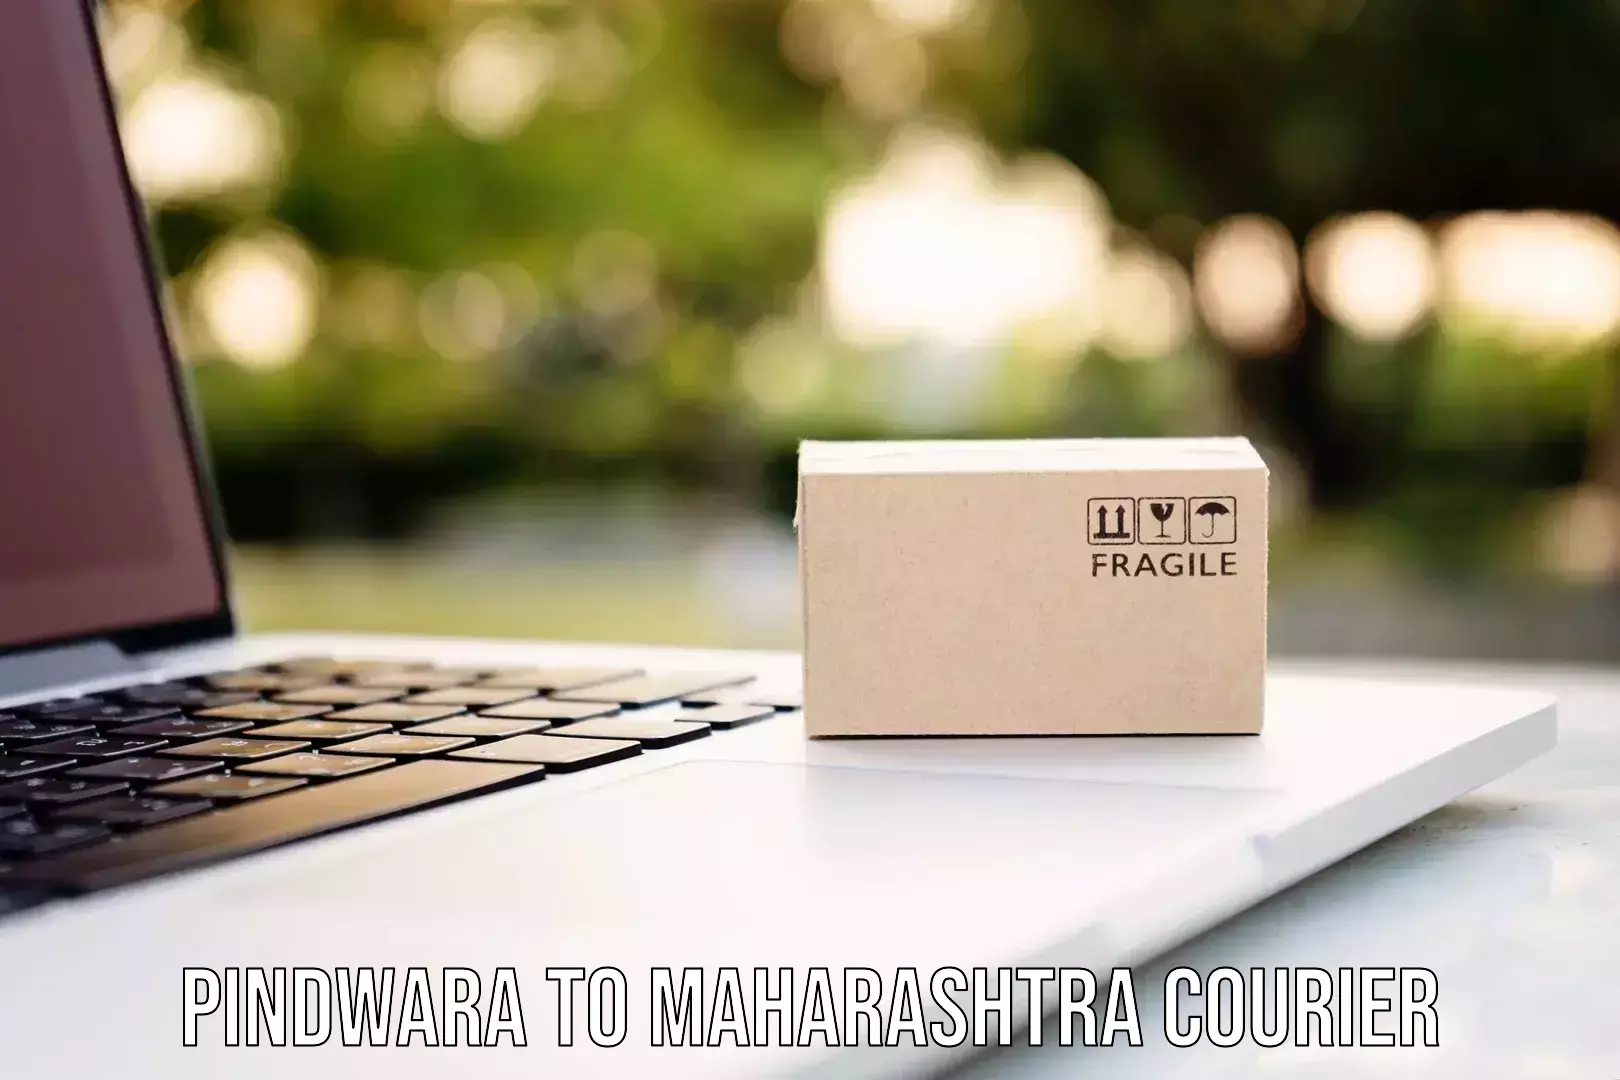 Cost-effective shipping solutions Pindwara to Maharashtra